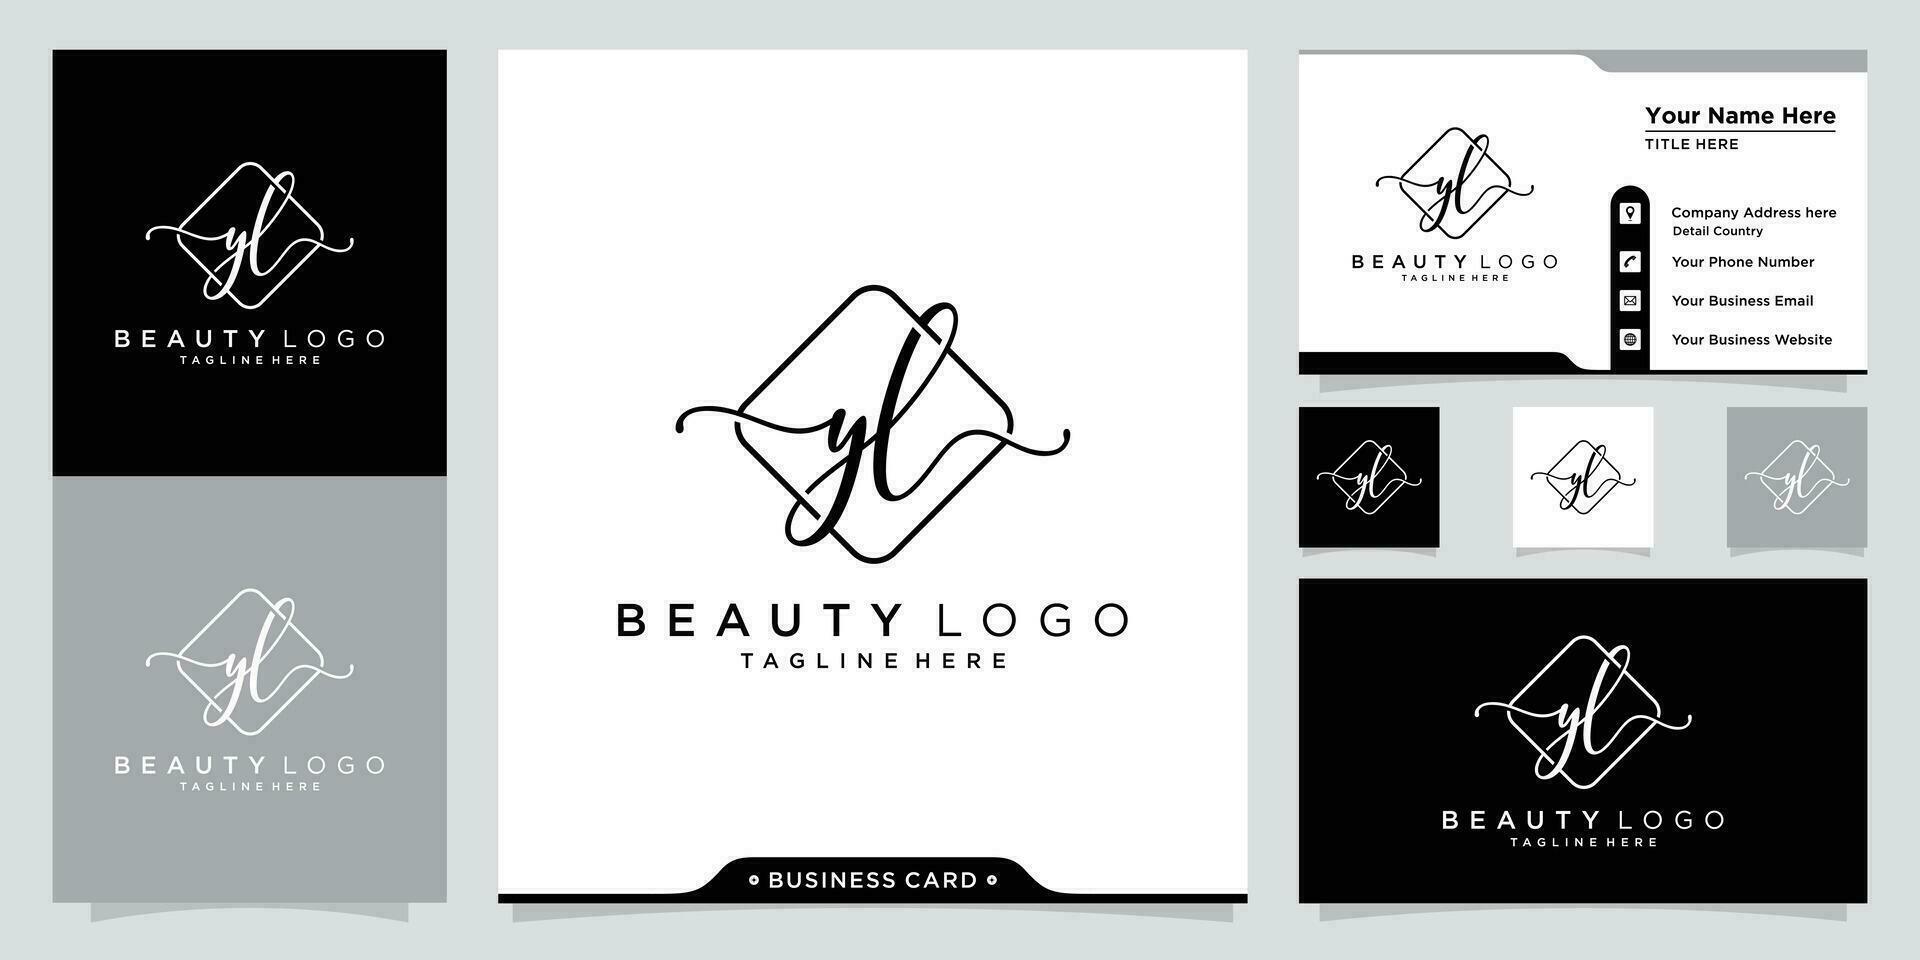 yl inicial escritura logo vector con negocio tarjeta diseño